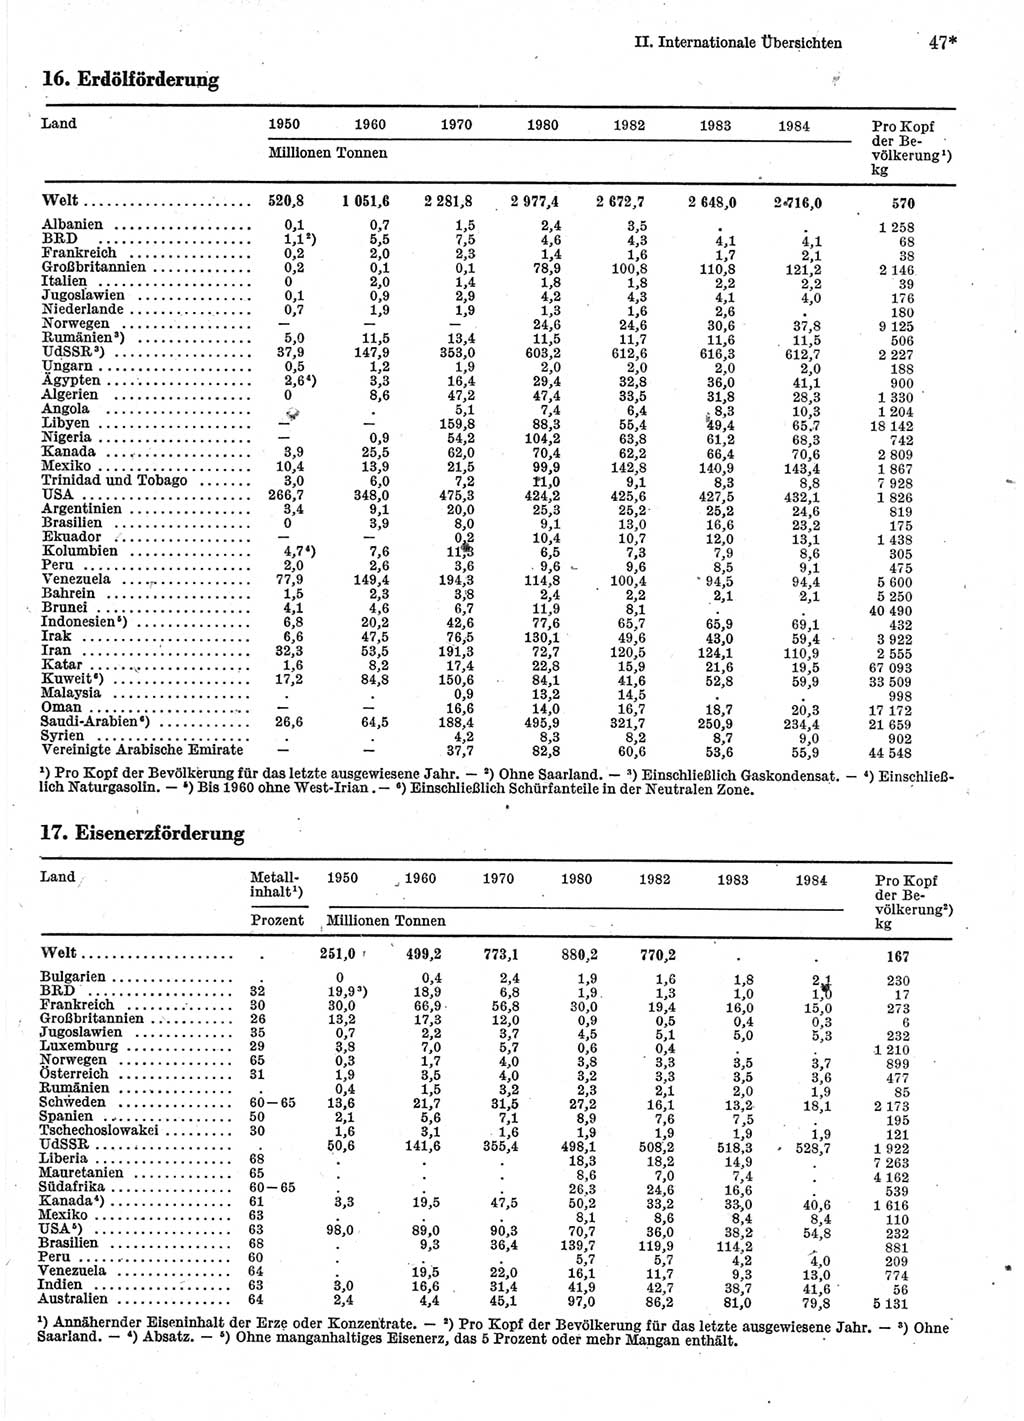 Statistisches Jahrbuch der Deutschen Demokratischen Republik (DDR) 1986, Seite 47 (Stat. Jb. DDR 1986, S. 47)